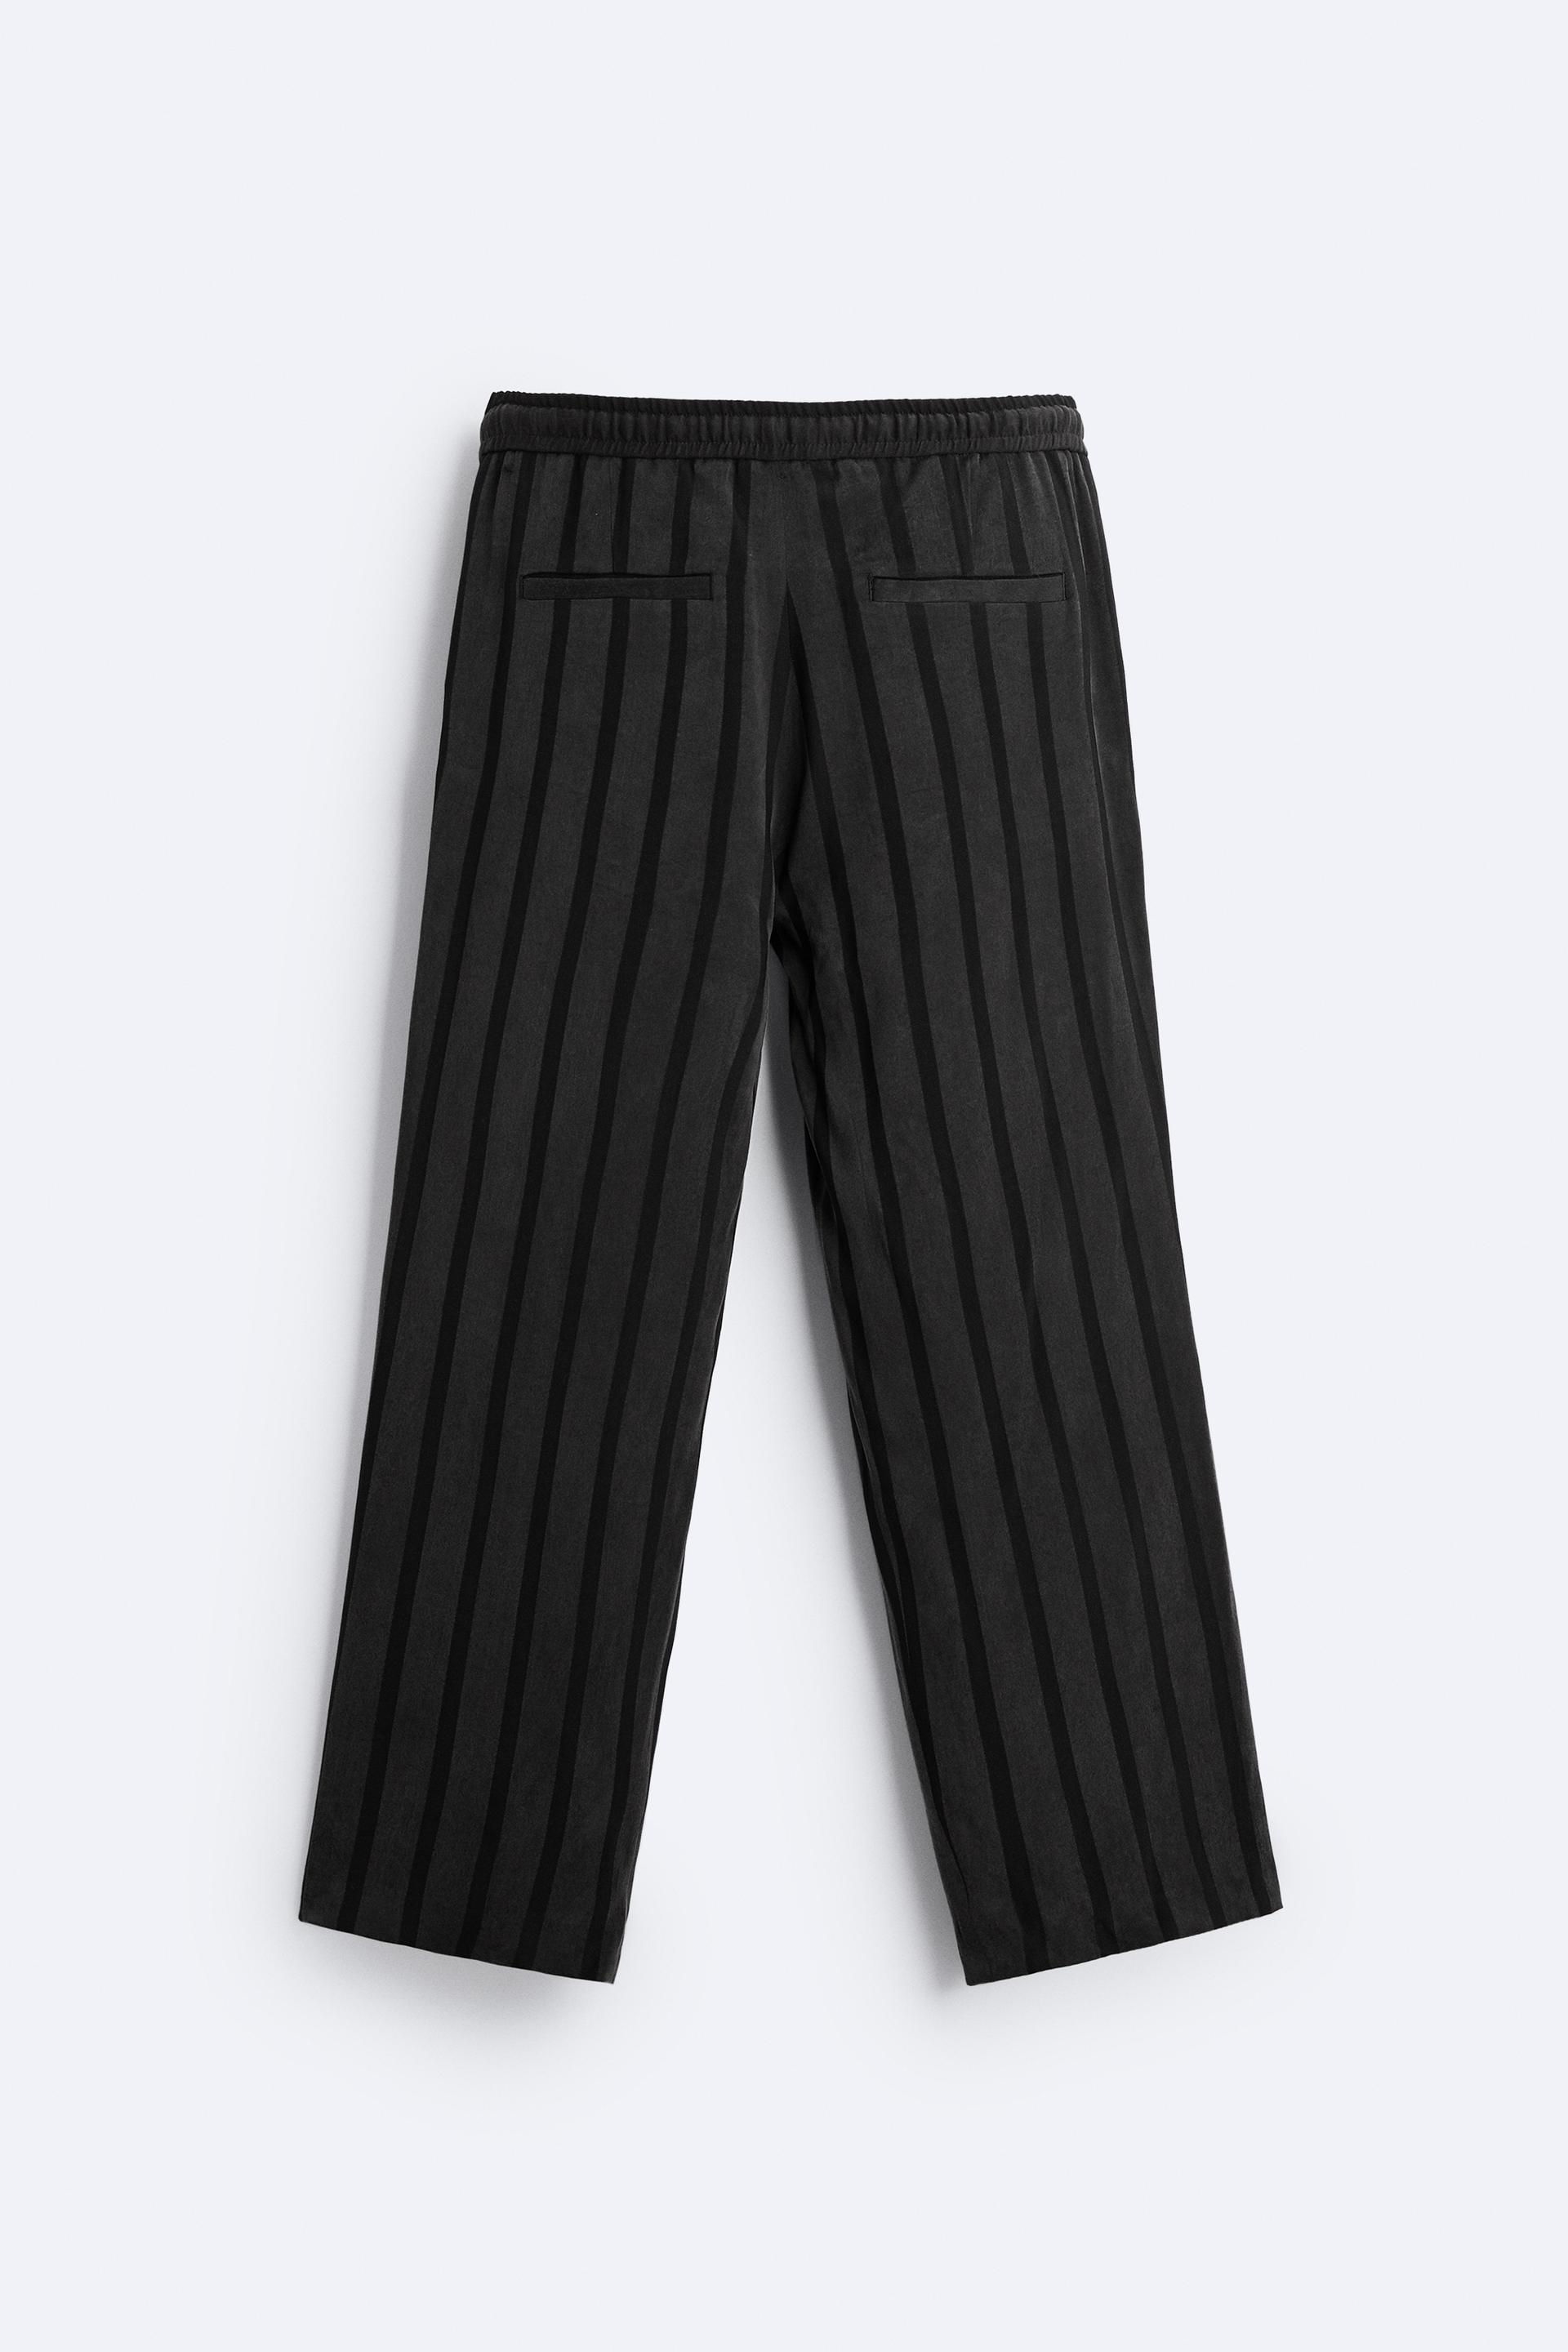 Poly viscose 4 way stretch women's trouser fabric wholesale YA1819